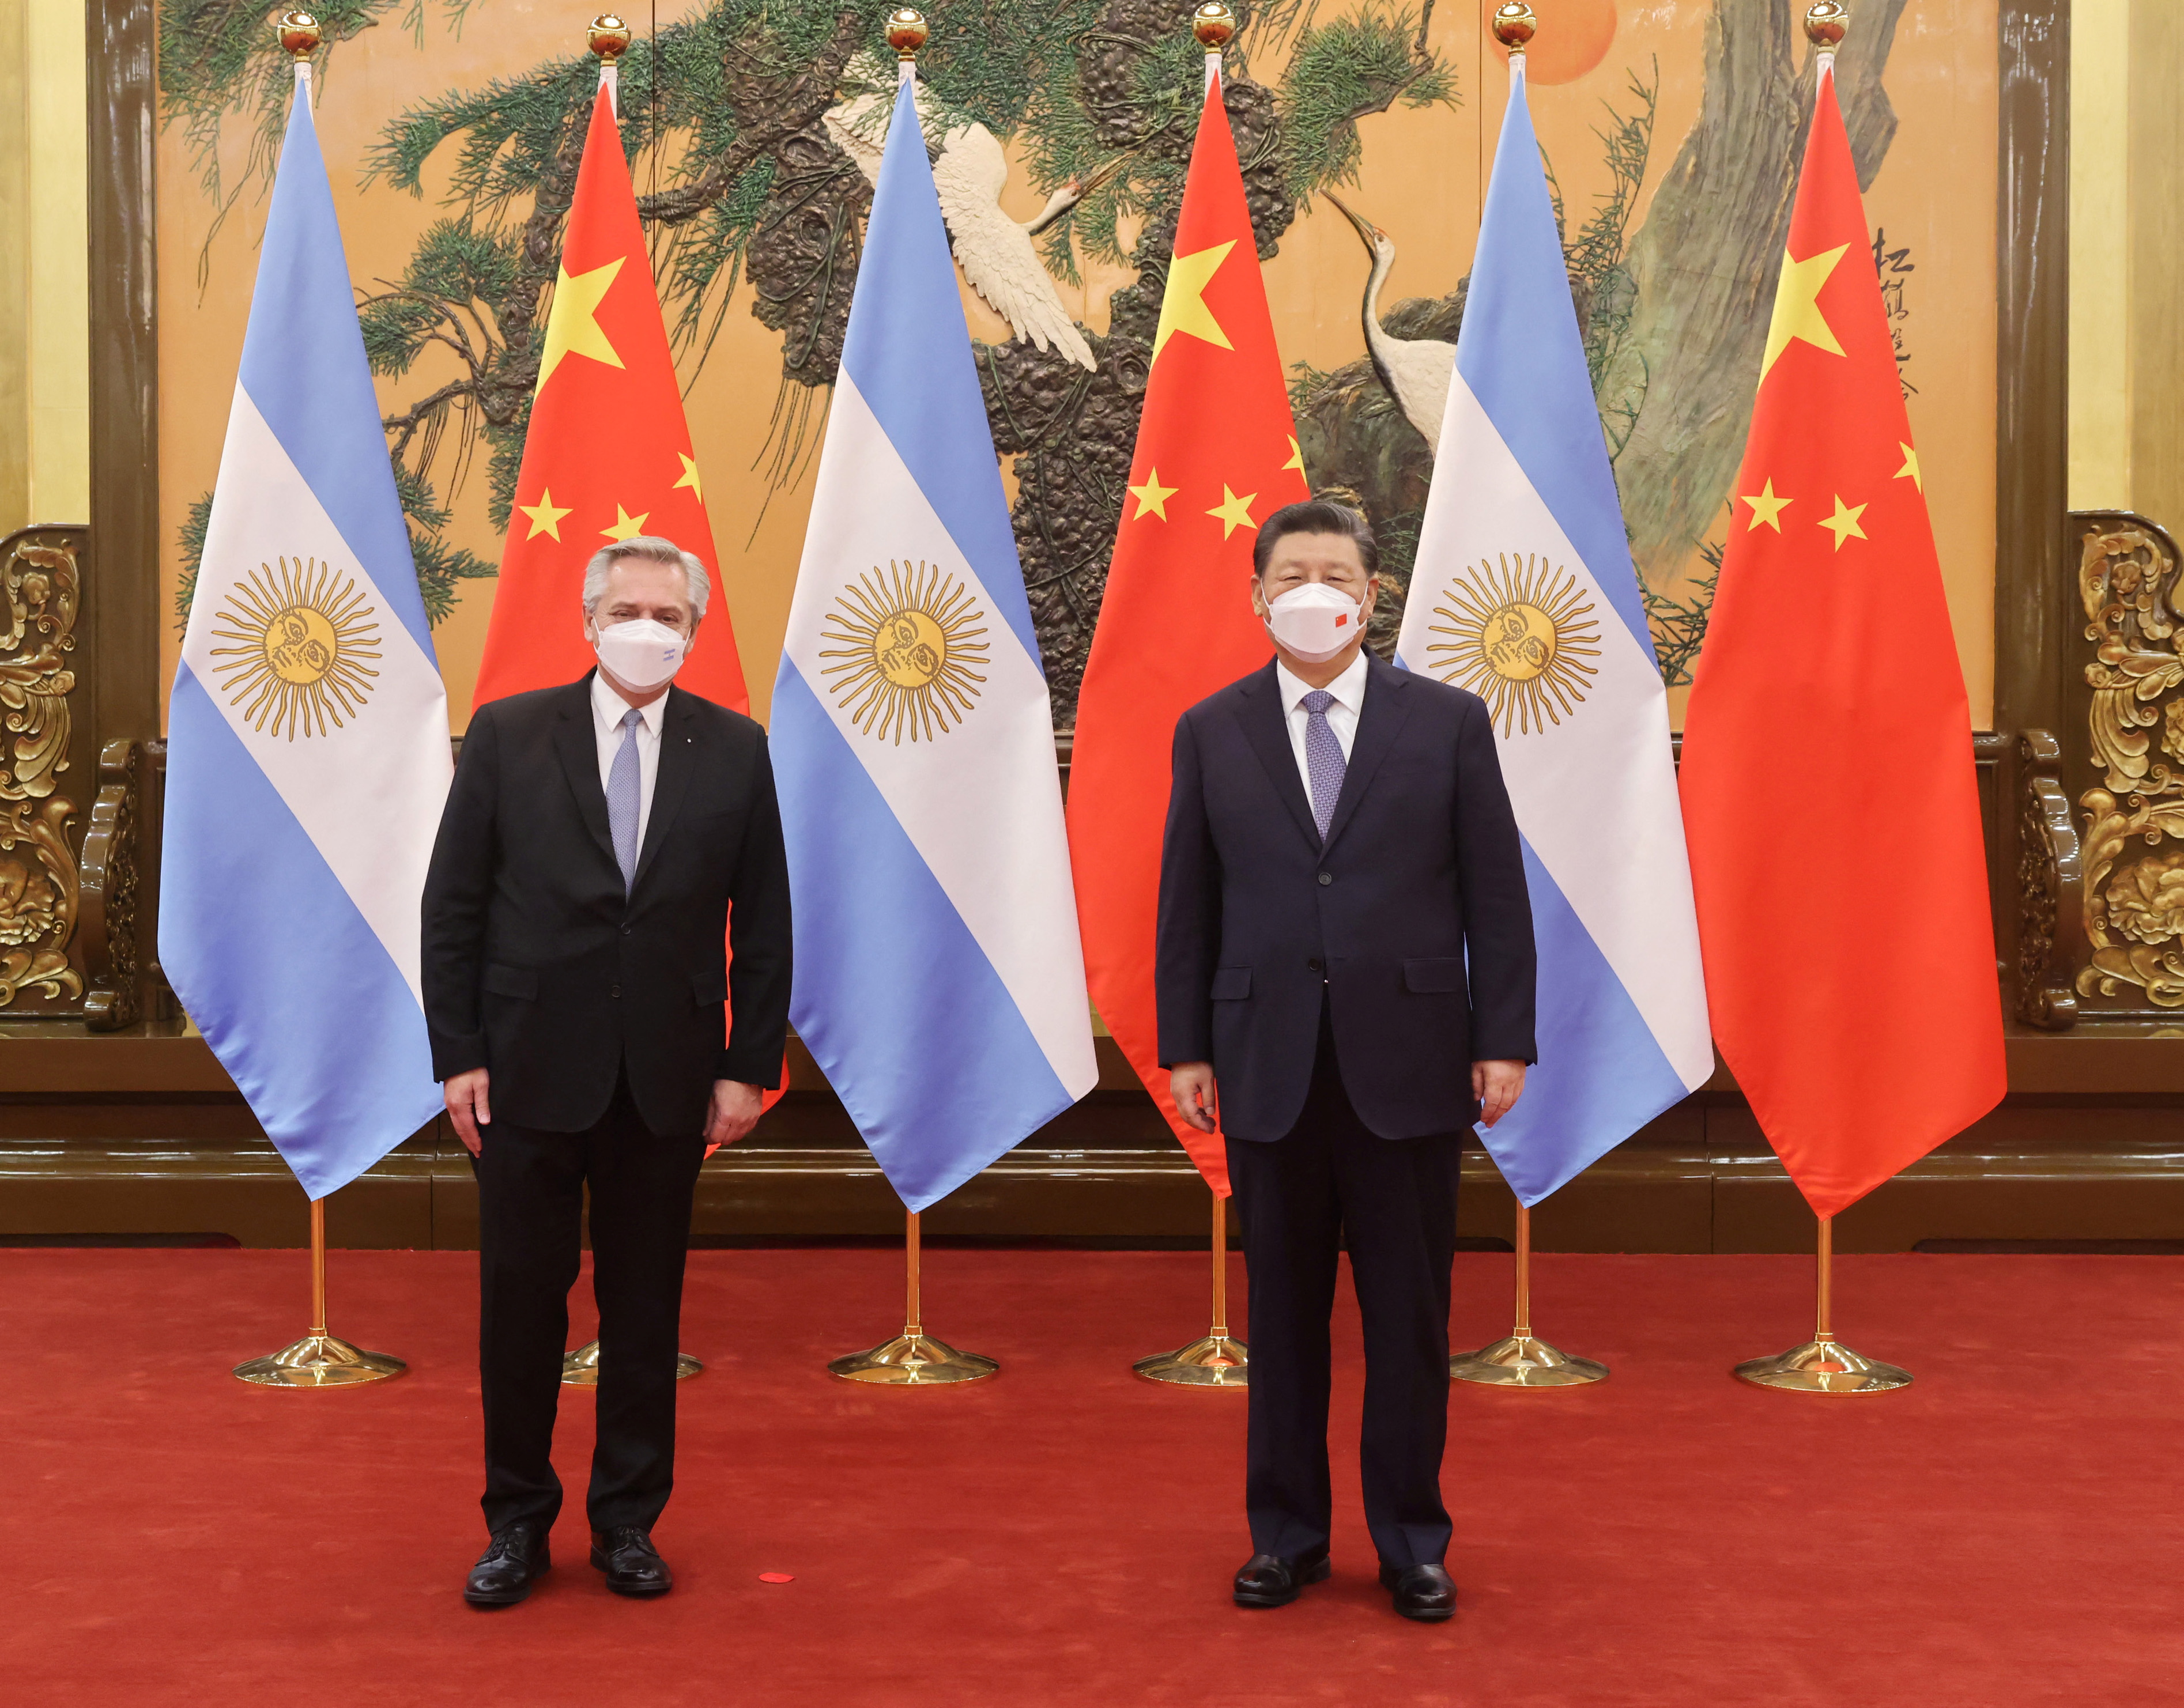 Alberto Fernandez og Xi Jinping under presidentens besøk i Kina i februar i fjor